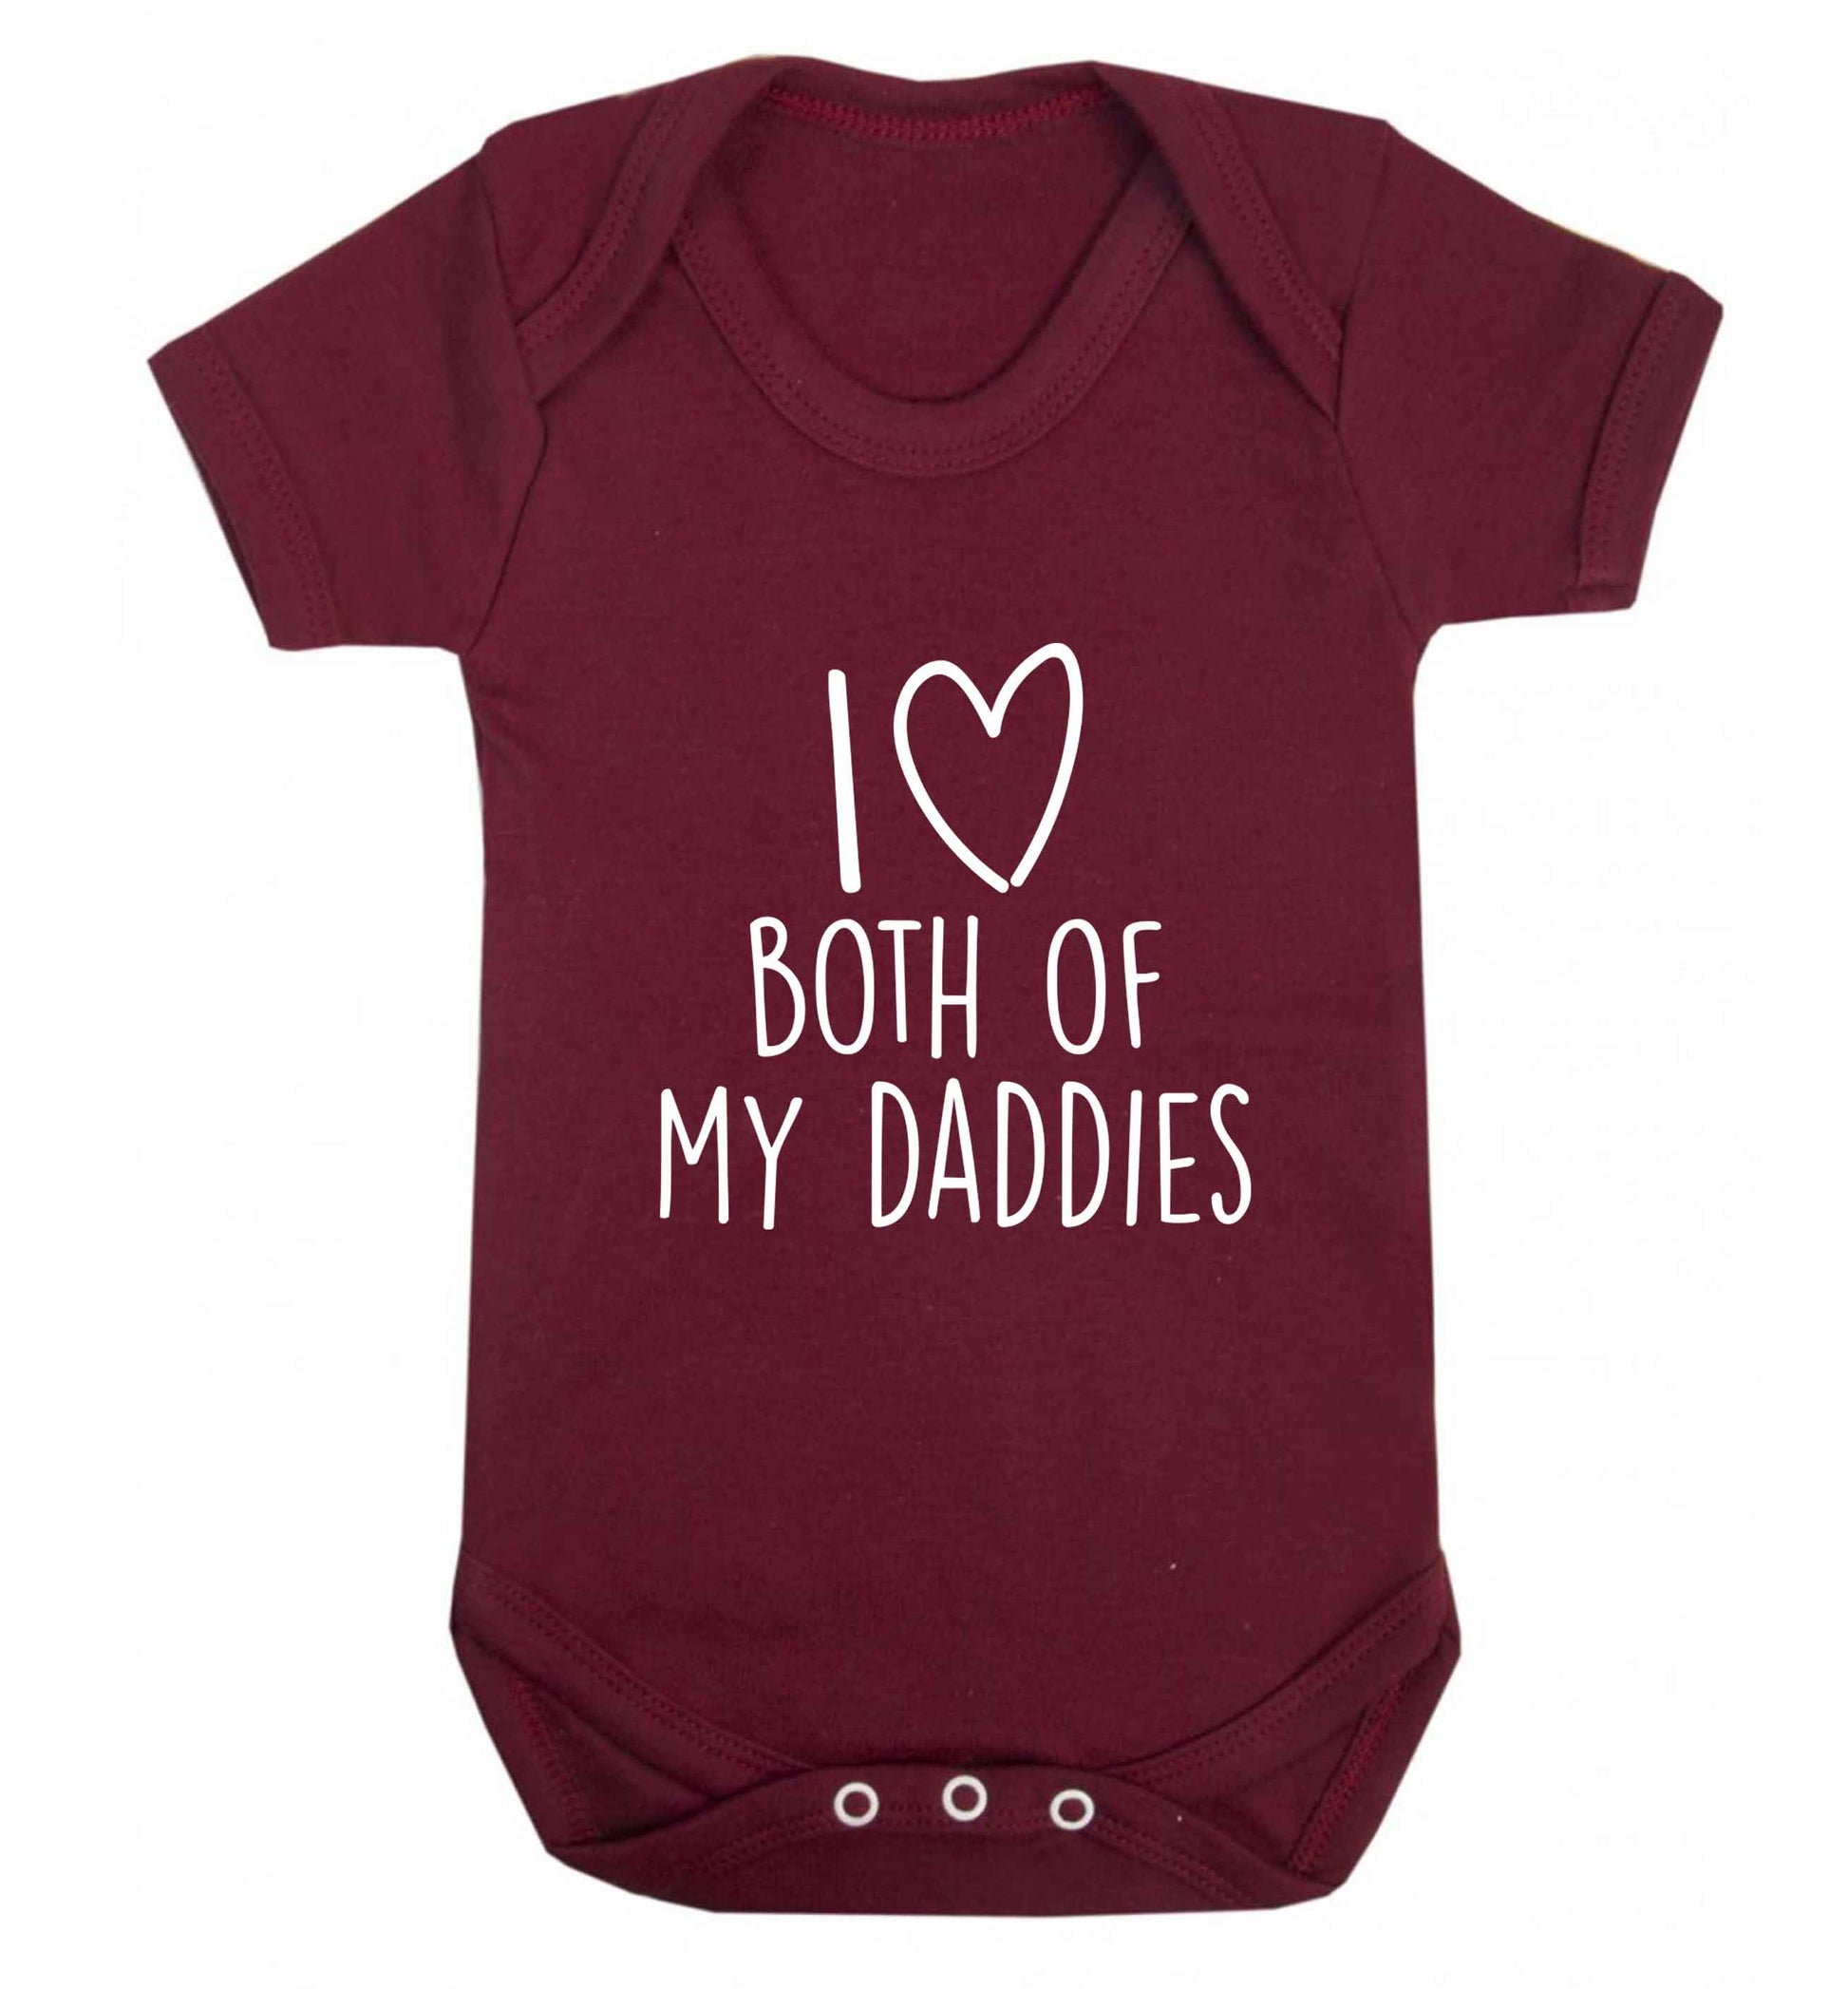 I love both of my daddies baby vest maroon 18-24 months